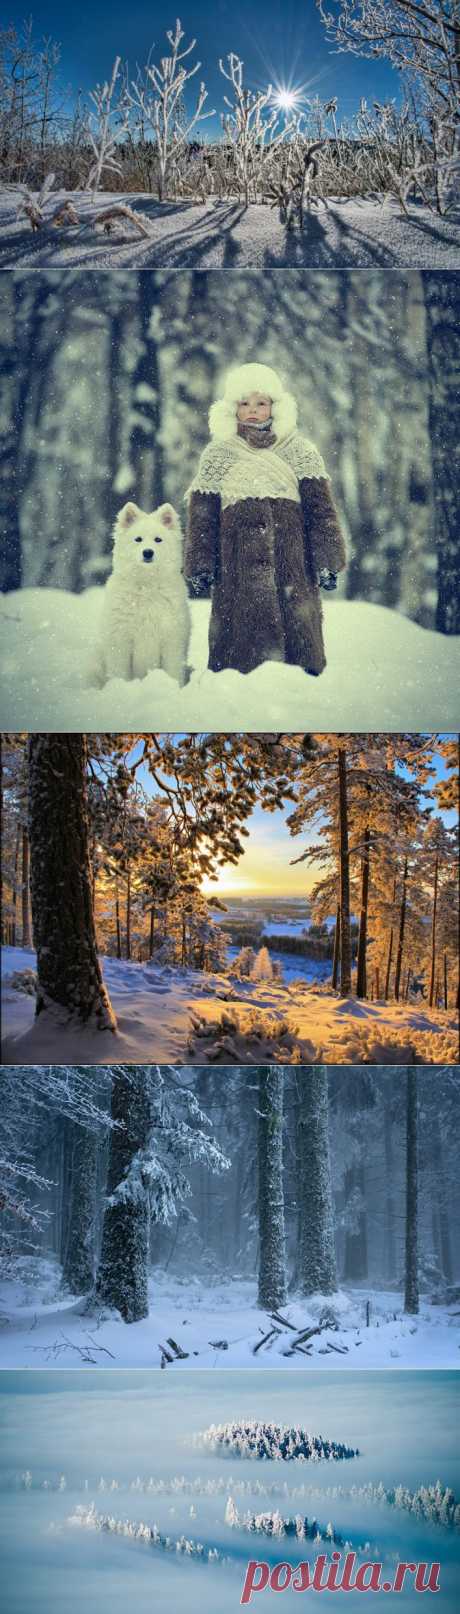 Что фотографировать зимой? Вдохновляющие примеры;)) - Фотопанорама